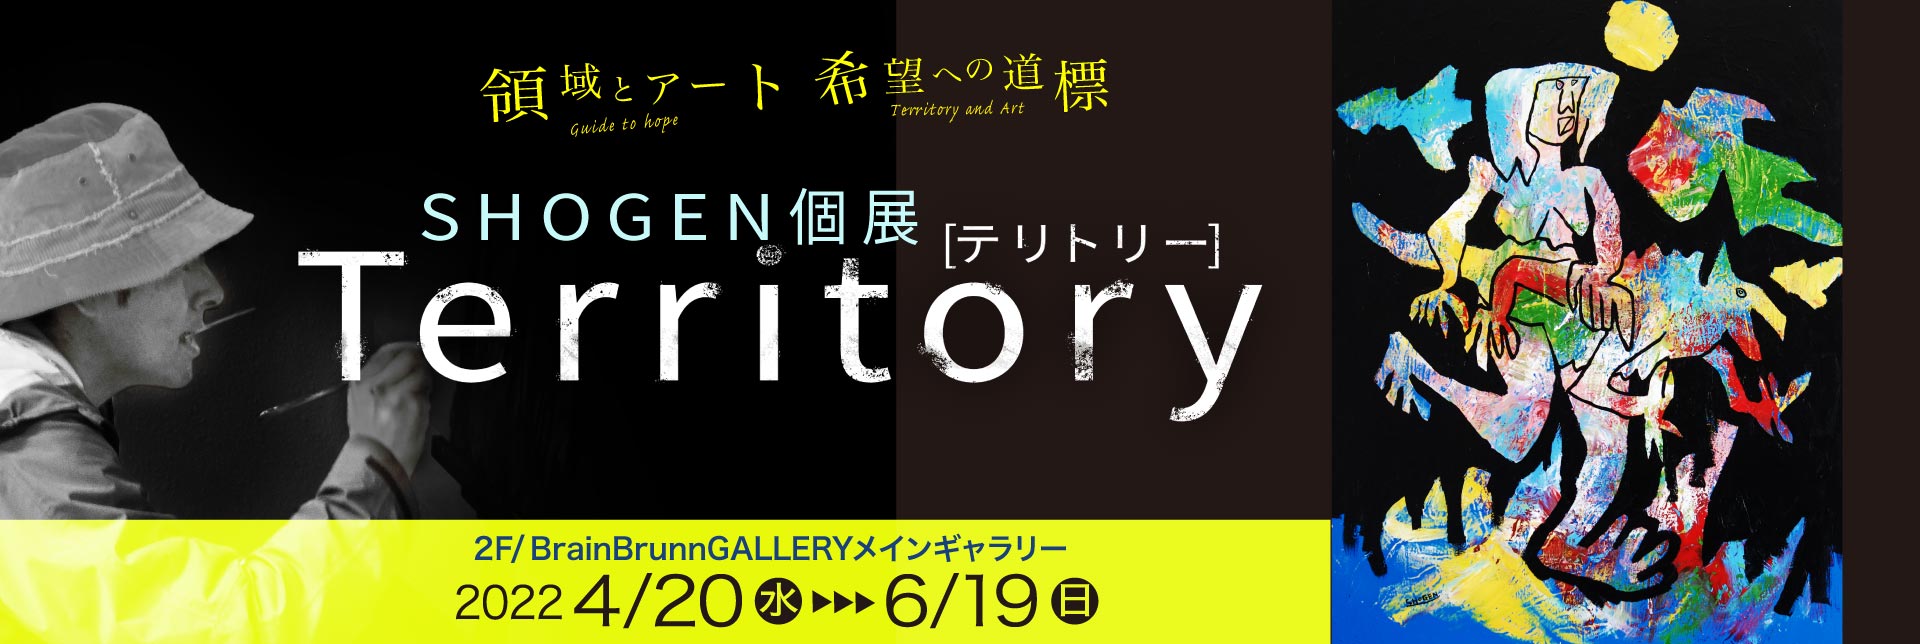 SHOGEN個展【Territory - テリトリー】2022年4月20日開始